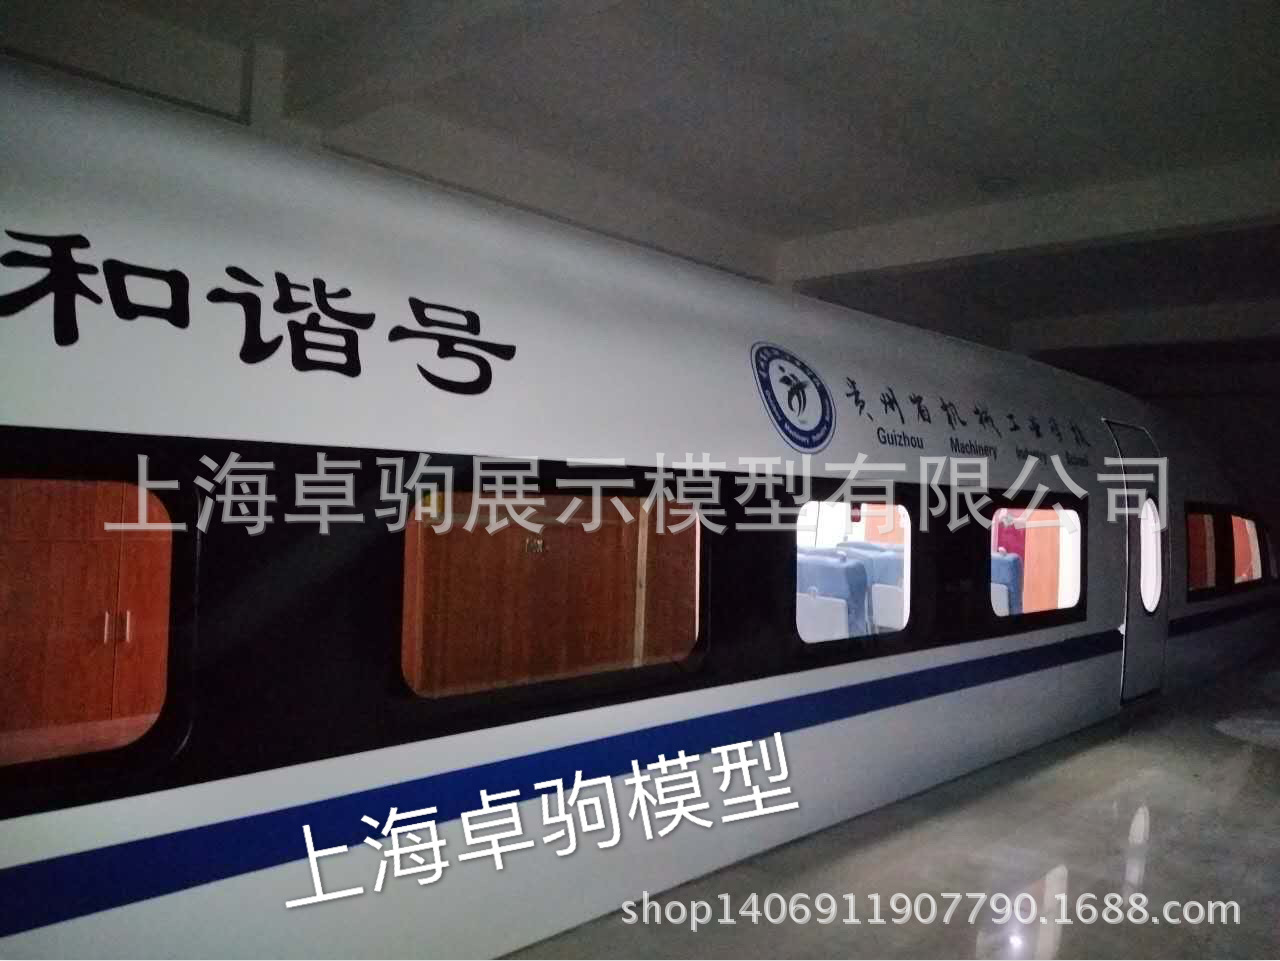 大型模拟舱动车高铁教学实训设备上海卓驹展示模型专业加工定制示例图4